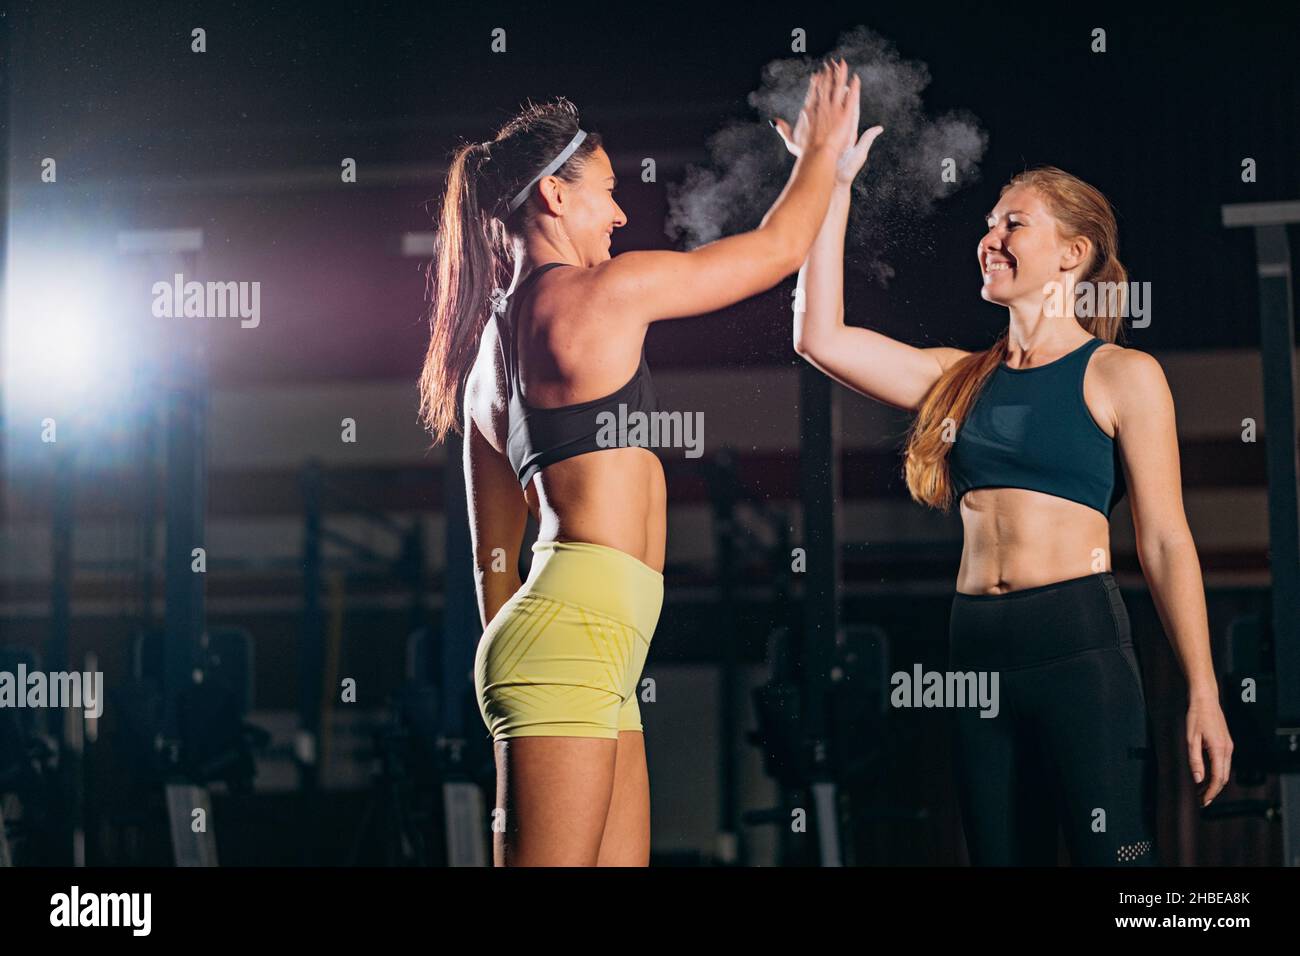 Freundinnen tragen Sport-Outfits geben High Five zusammen trainieren und nehmen Gewichtheben im Fitnessstudio gegen künstliche Beleuchtung Stockfoto